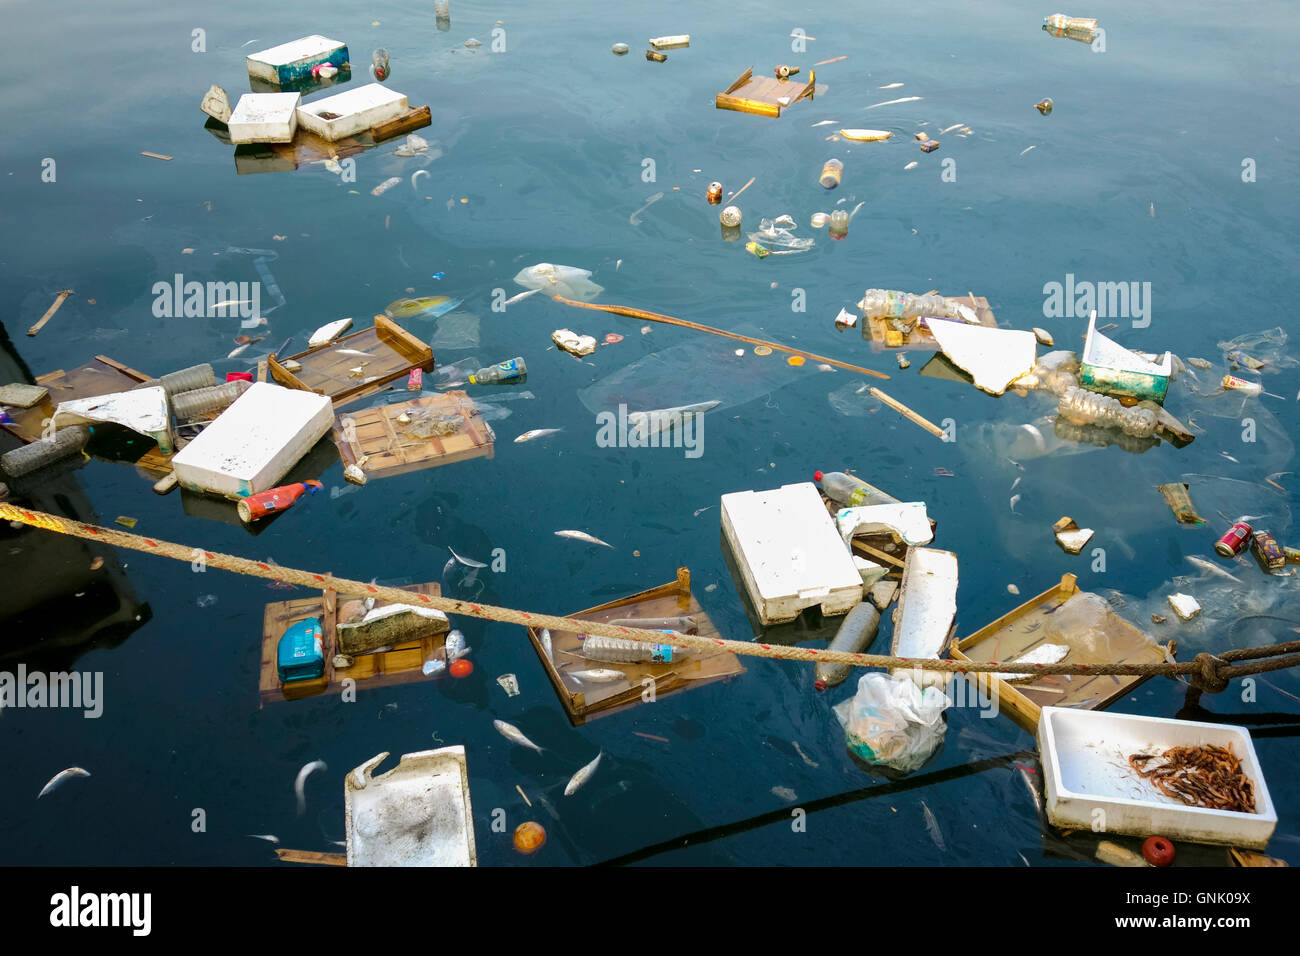 La pollution marine, des déchets et d'ordures, de poissons morts flottant dans la mer, l'Espagne. Banque D'Images